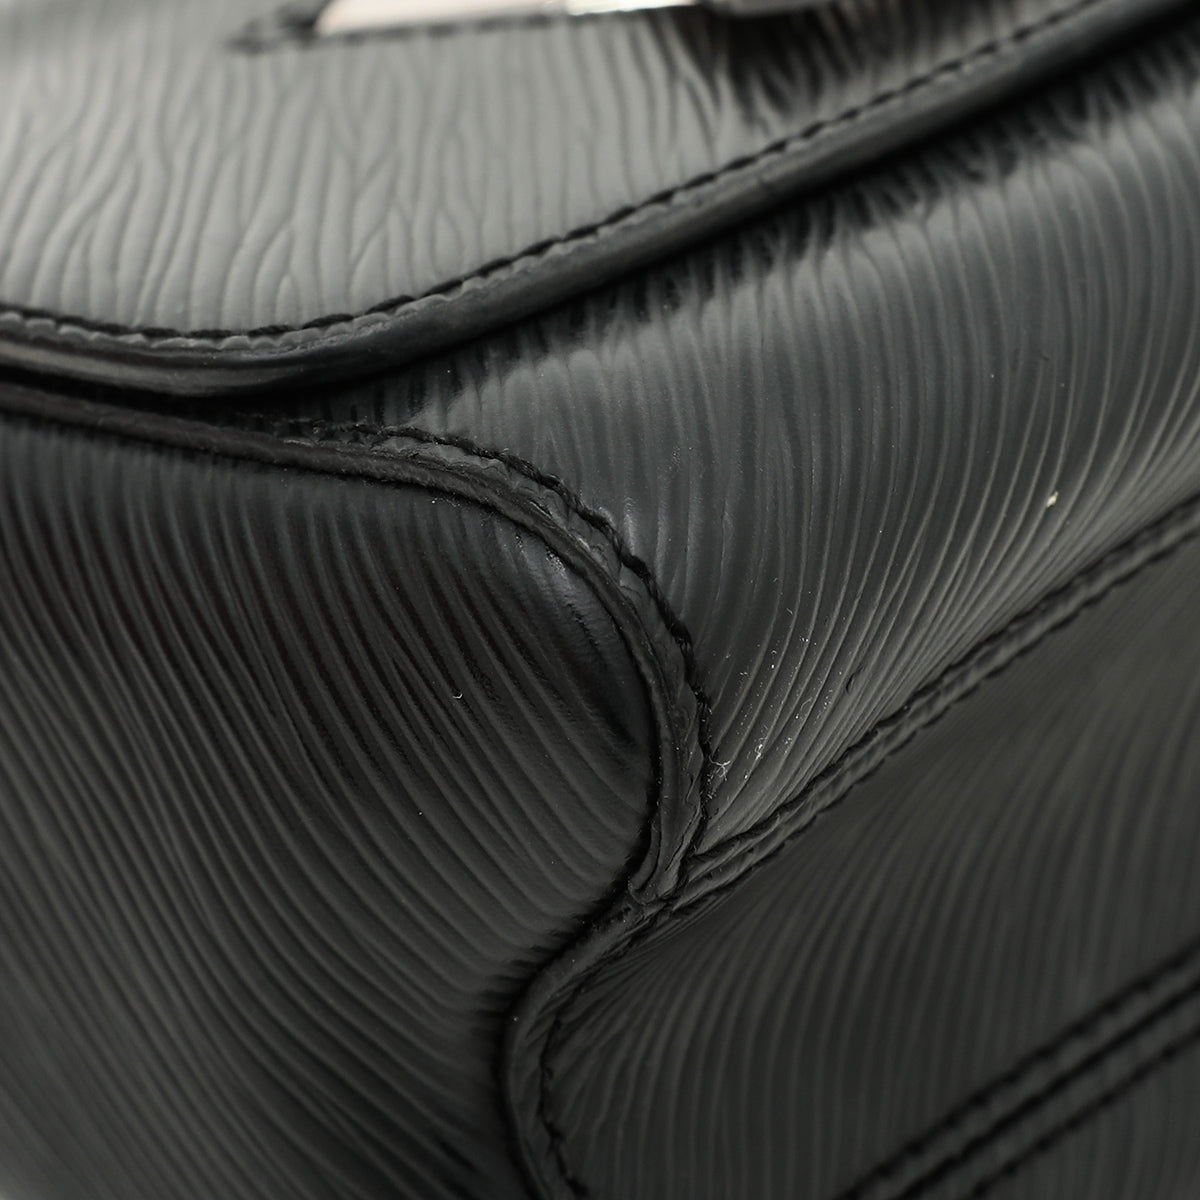 Louis Vuitton Noir Twist Bag PM